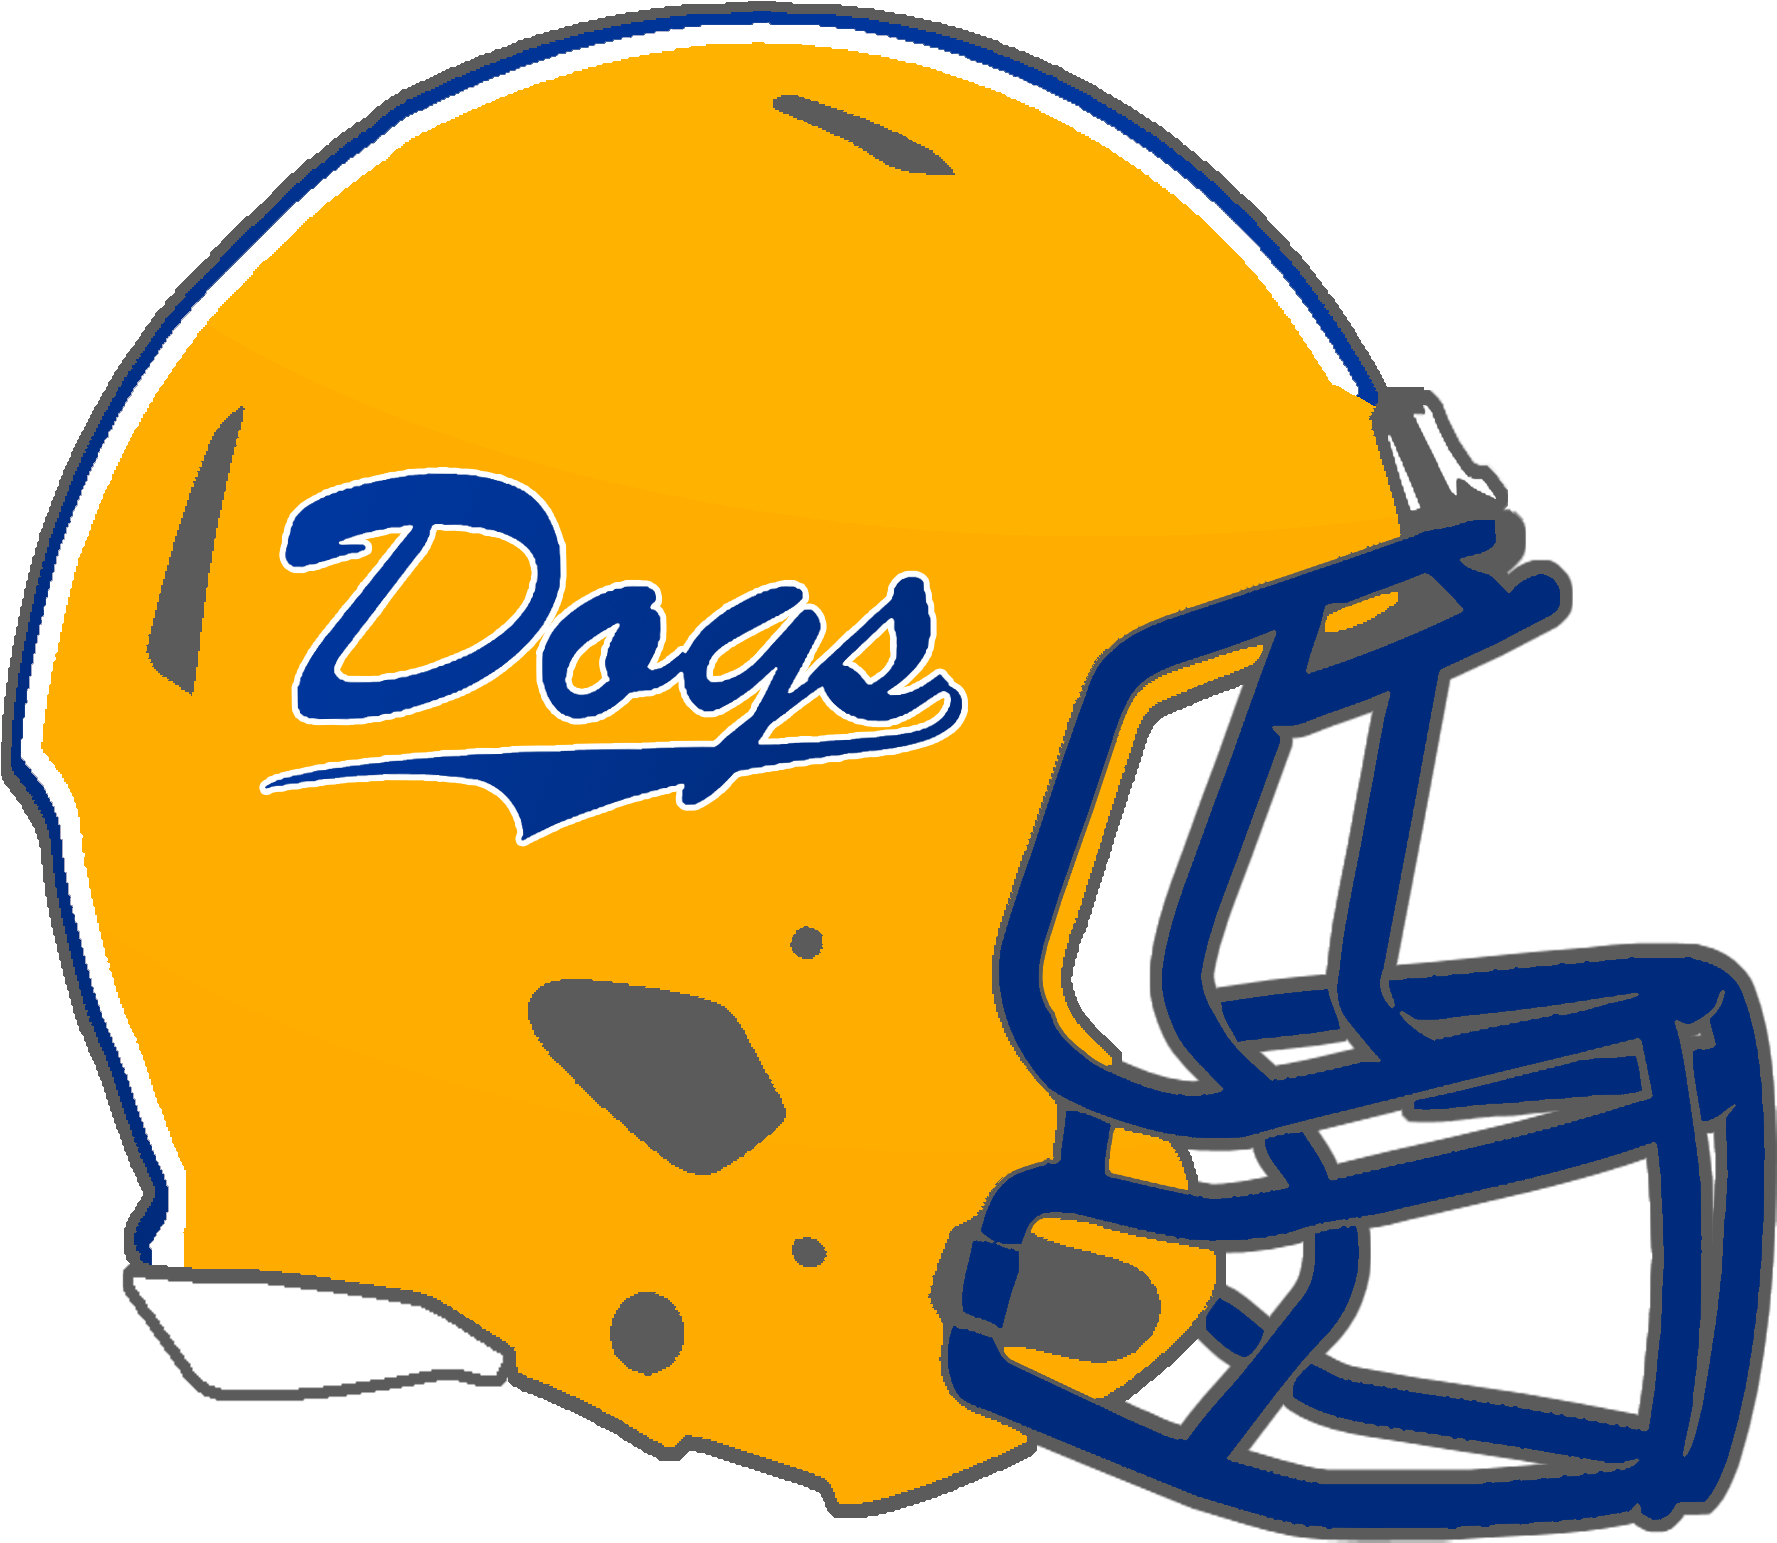 Mississippi High School Football Helmets 2a - Choctaw Central High School (1800x1565)